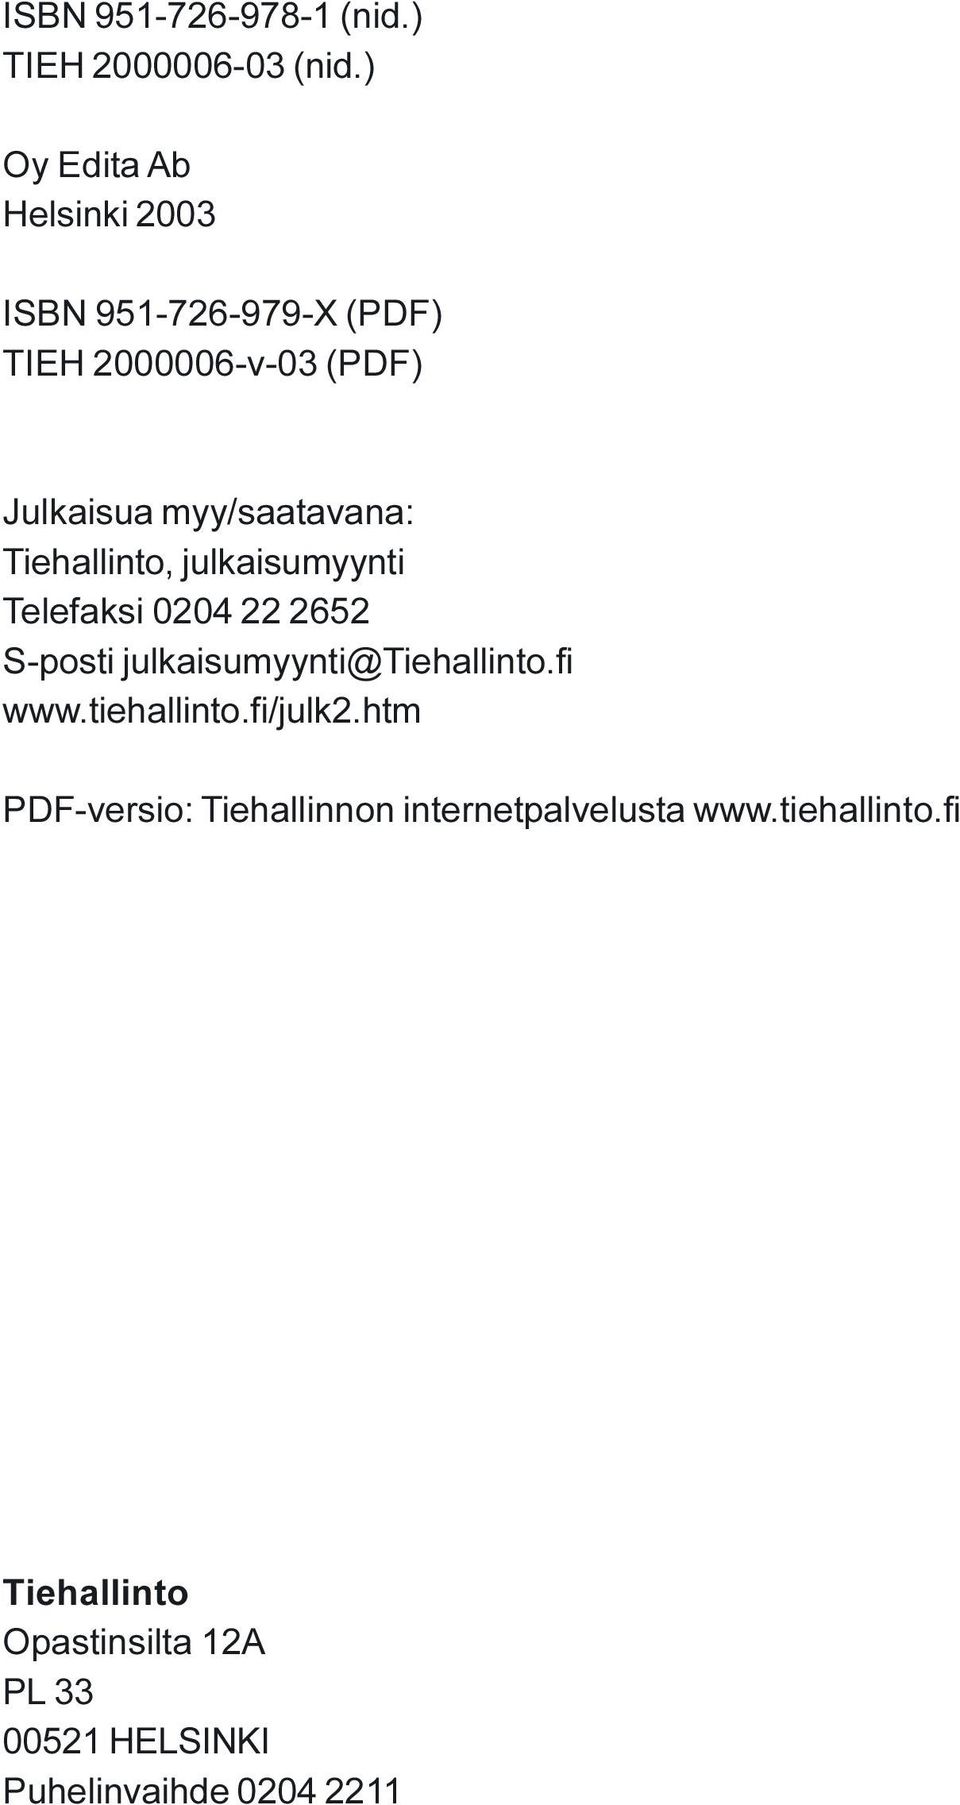 Tiehallinto, julkaisumyynti Telefaksi 0204 22 2652 S-posti julkaisumyynti@tiehallinto.fi www.